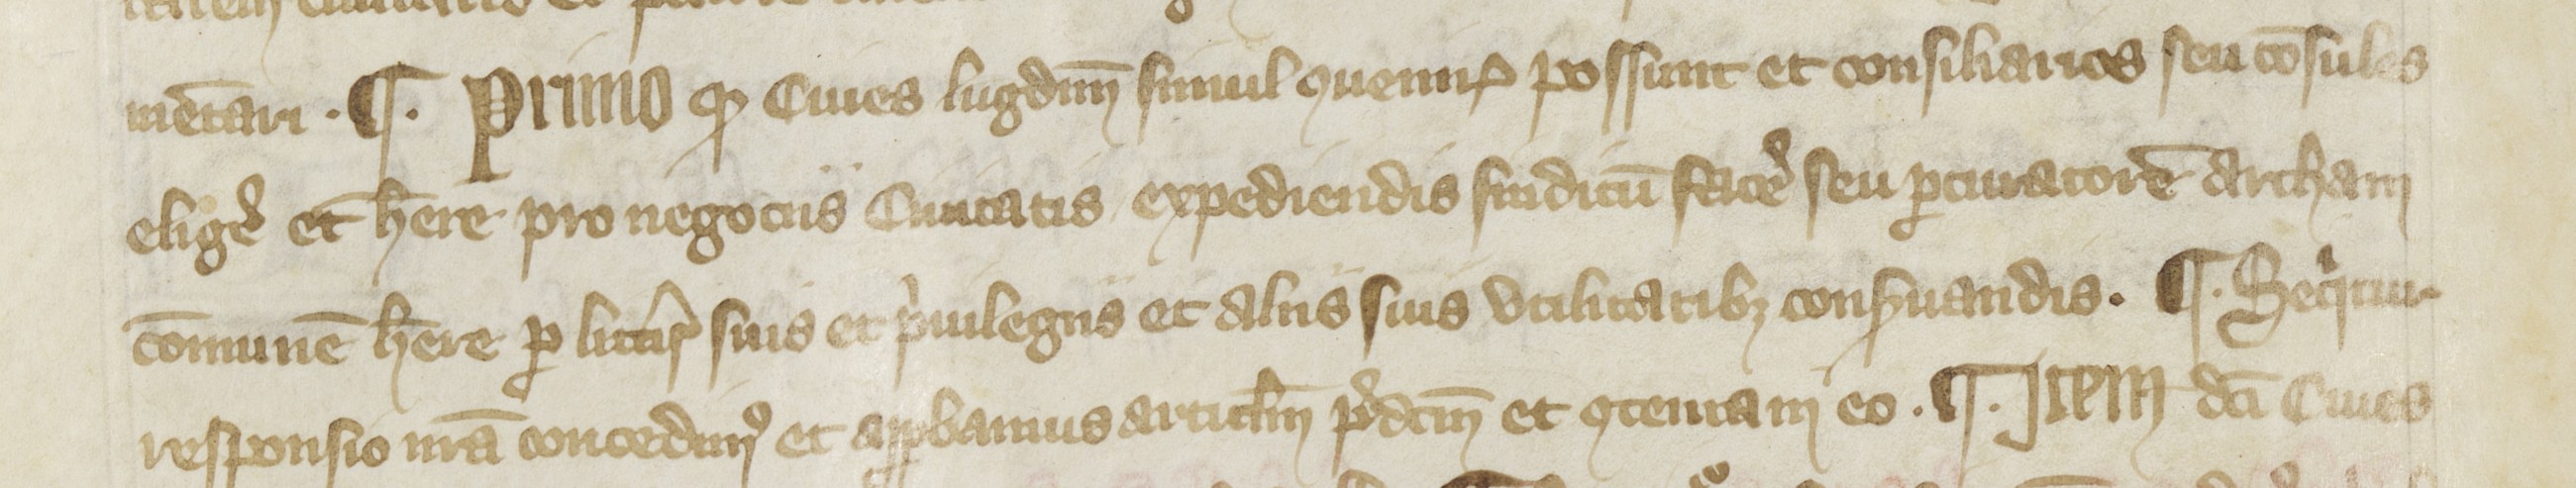 1er article de la charte sapaudine du 21/06/1320 sur le droit d'élire les consuls et de conserver les archives (1320, cote : AA/1, folio 52r)